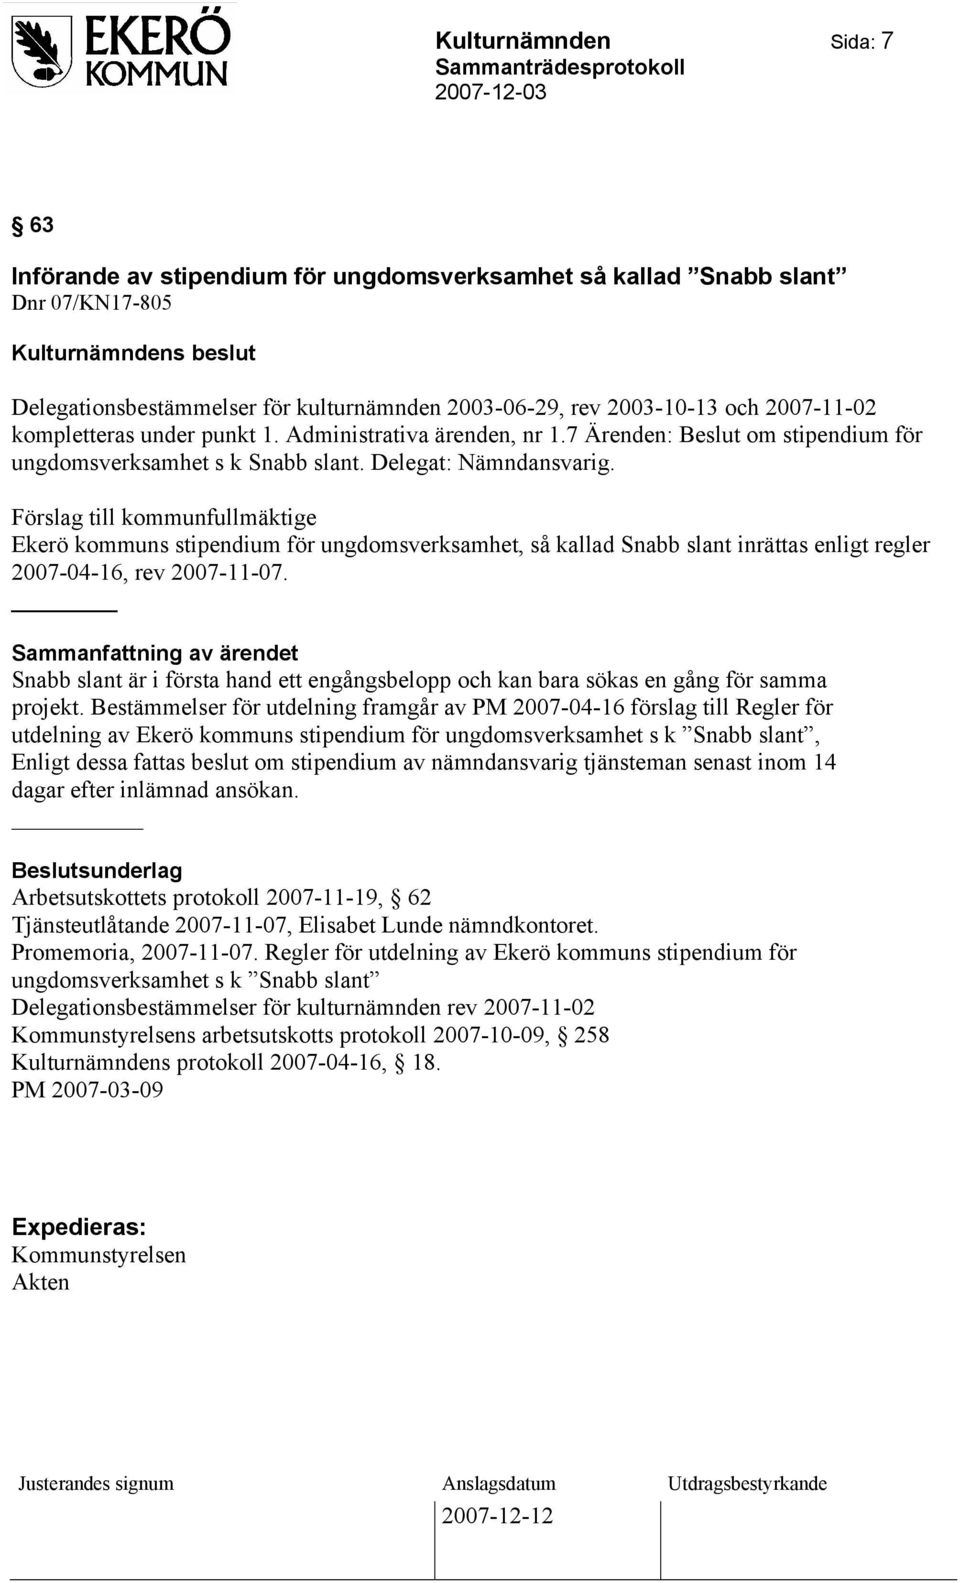 Förslag till kommunfullmäktige Ekerö kommuns stipendium för ungdomsverksamhet, så kallad Snabb slant inrättas enligt regler 2007-04-16, rev 2007-11-07.